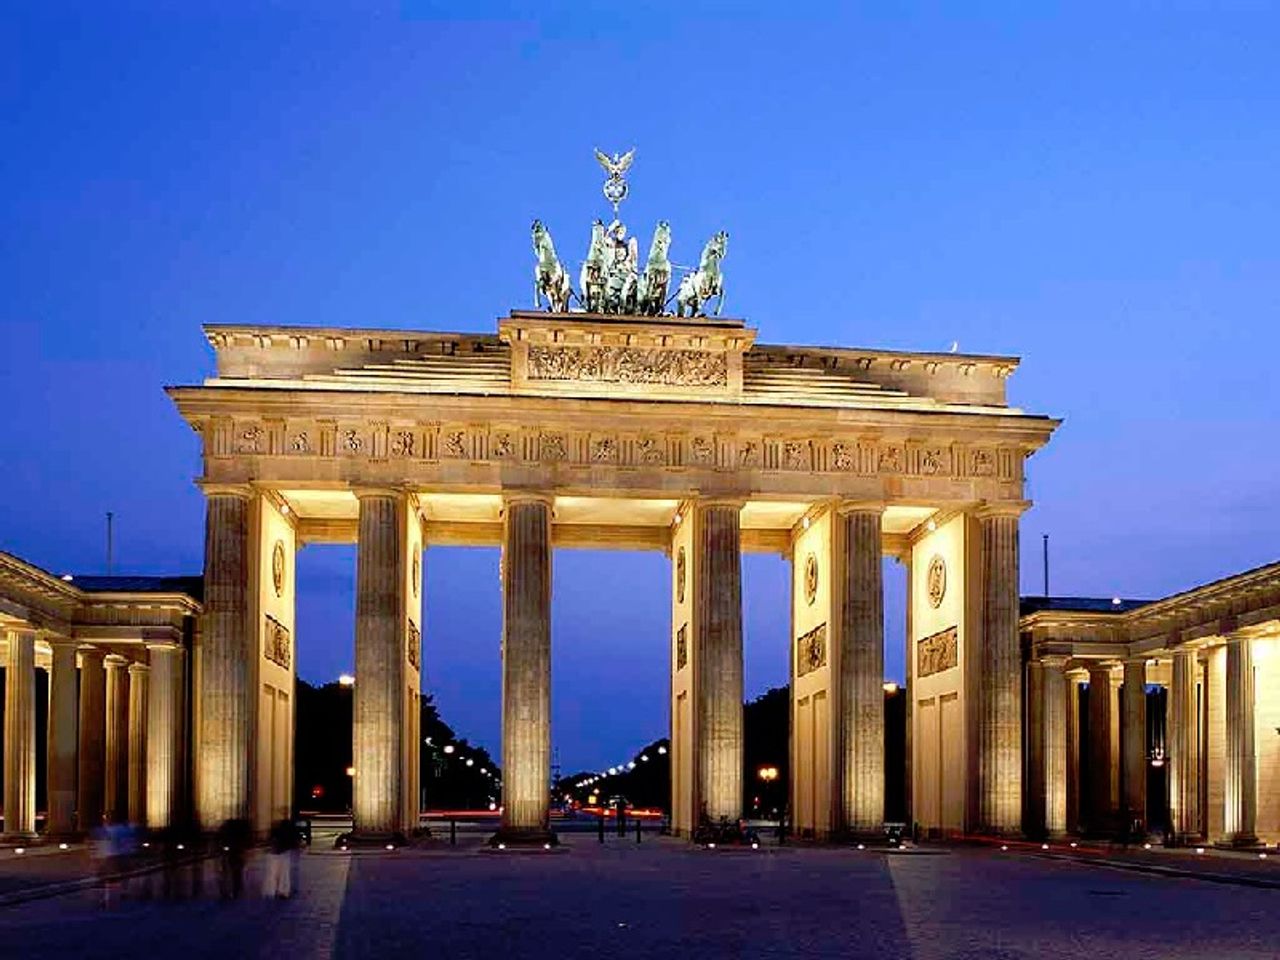 Berlin entdecken mit 24 Stunden Karte für den ÖPNV